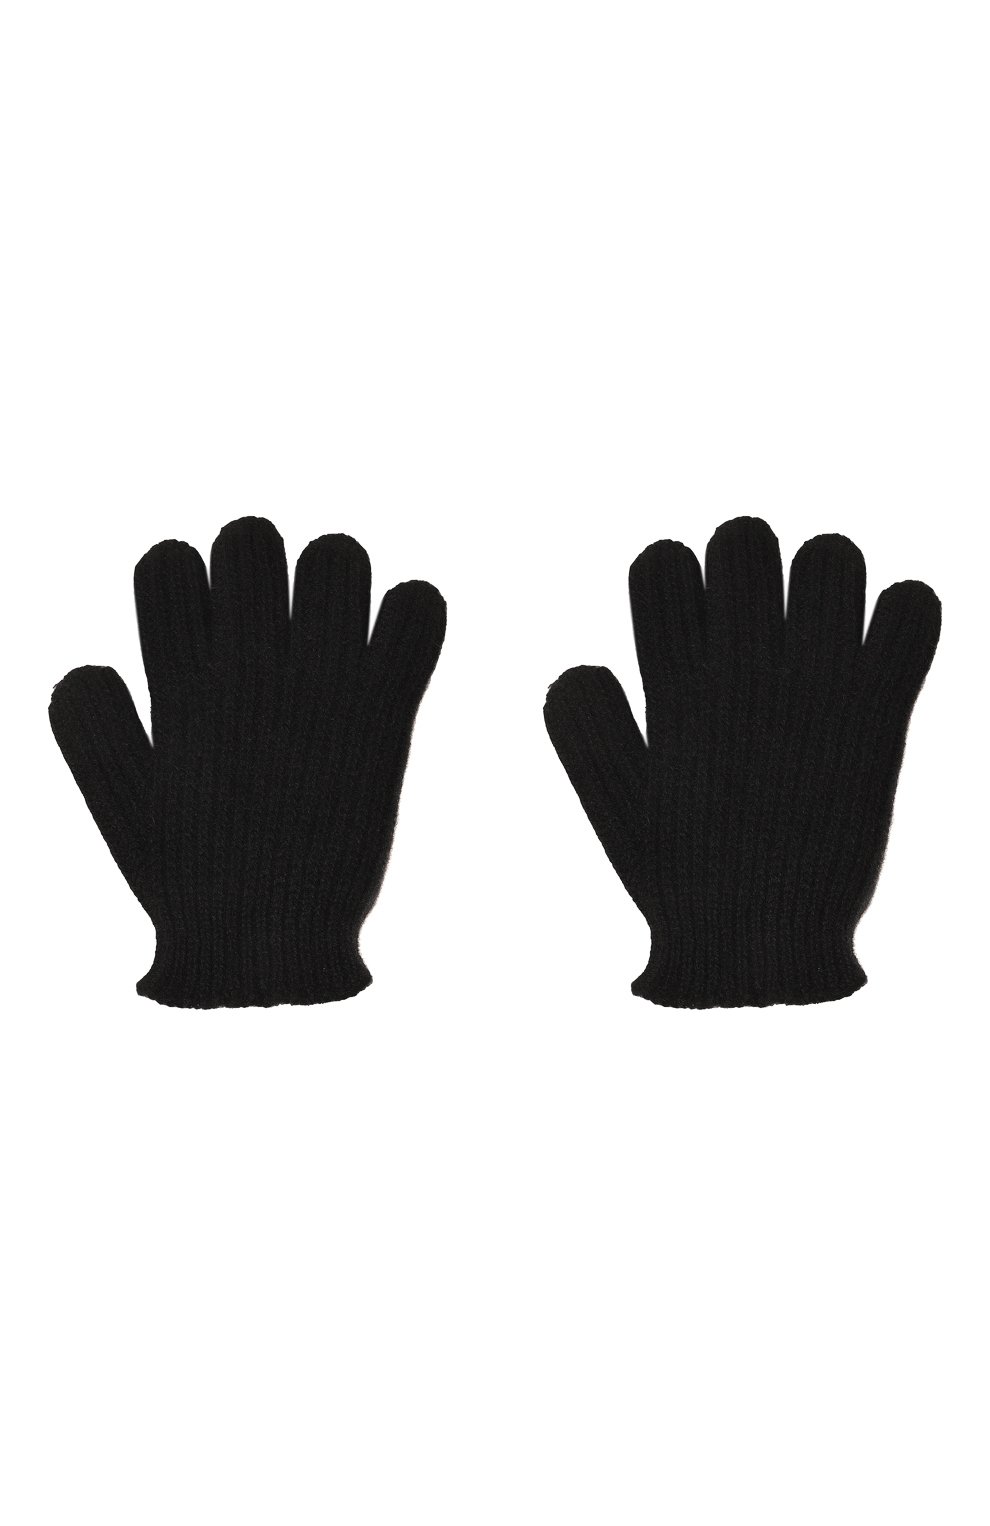 Детские кашемировые перчатки GIORGETTI CASHMERE черного цвета, арт. MB1855 | Фото 2 (Материал: Текстиль, Кашемир, Шерсть)